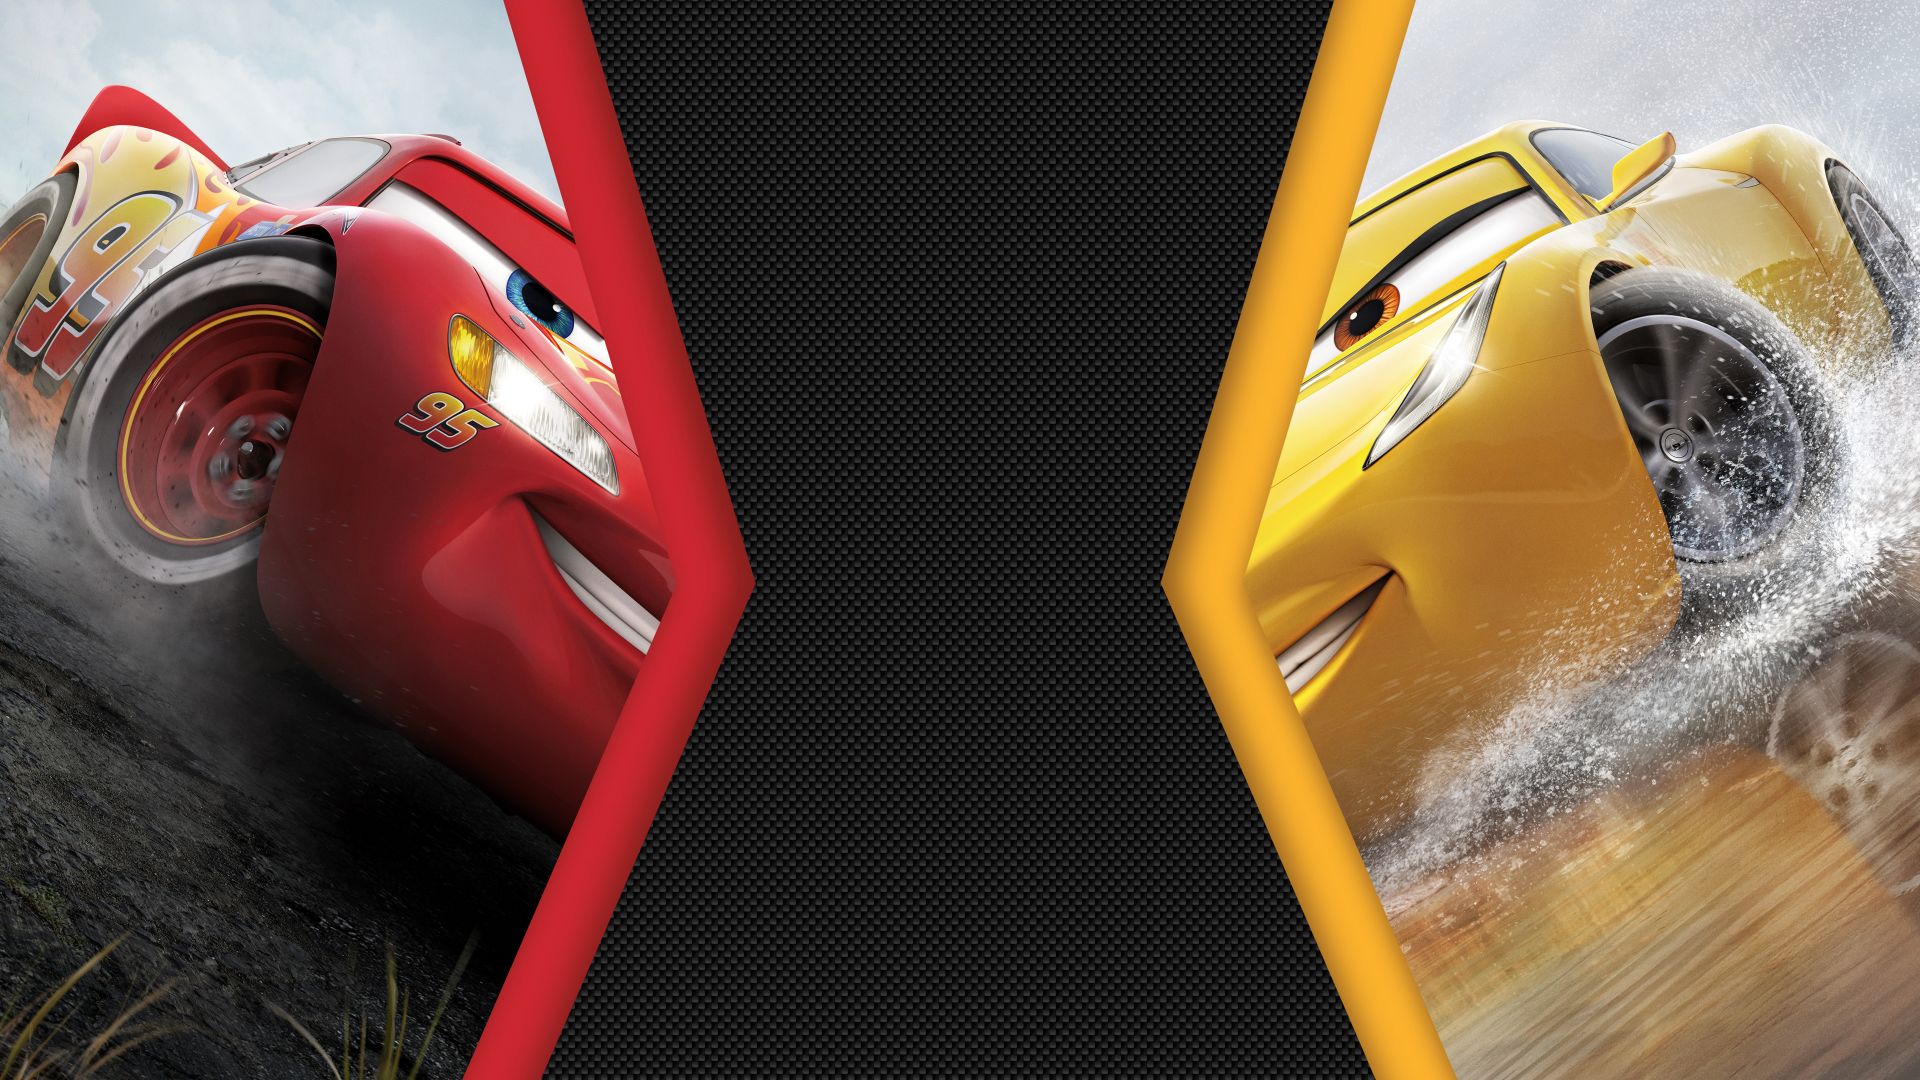 Wallpaper Cars 3, animation movie, Lightning McQueen vs Cruz Ramirez, 4k, 8k